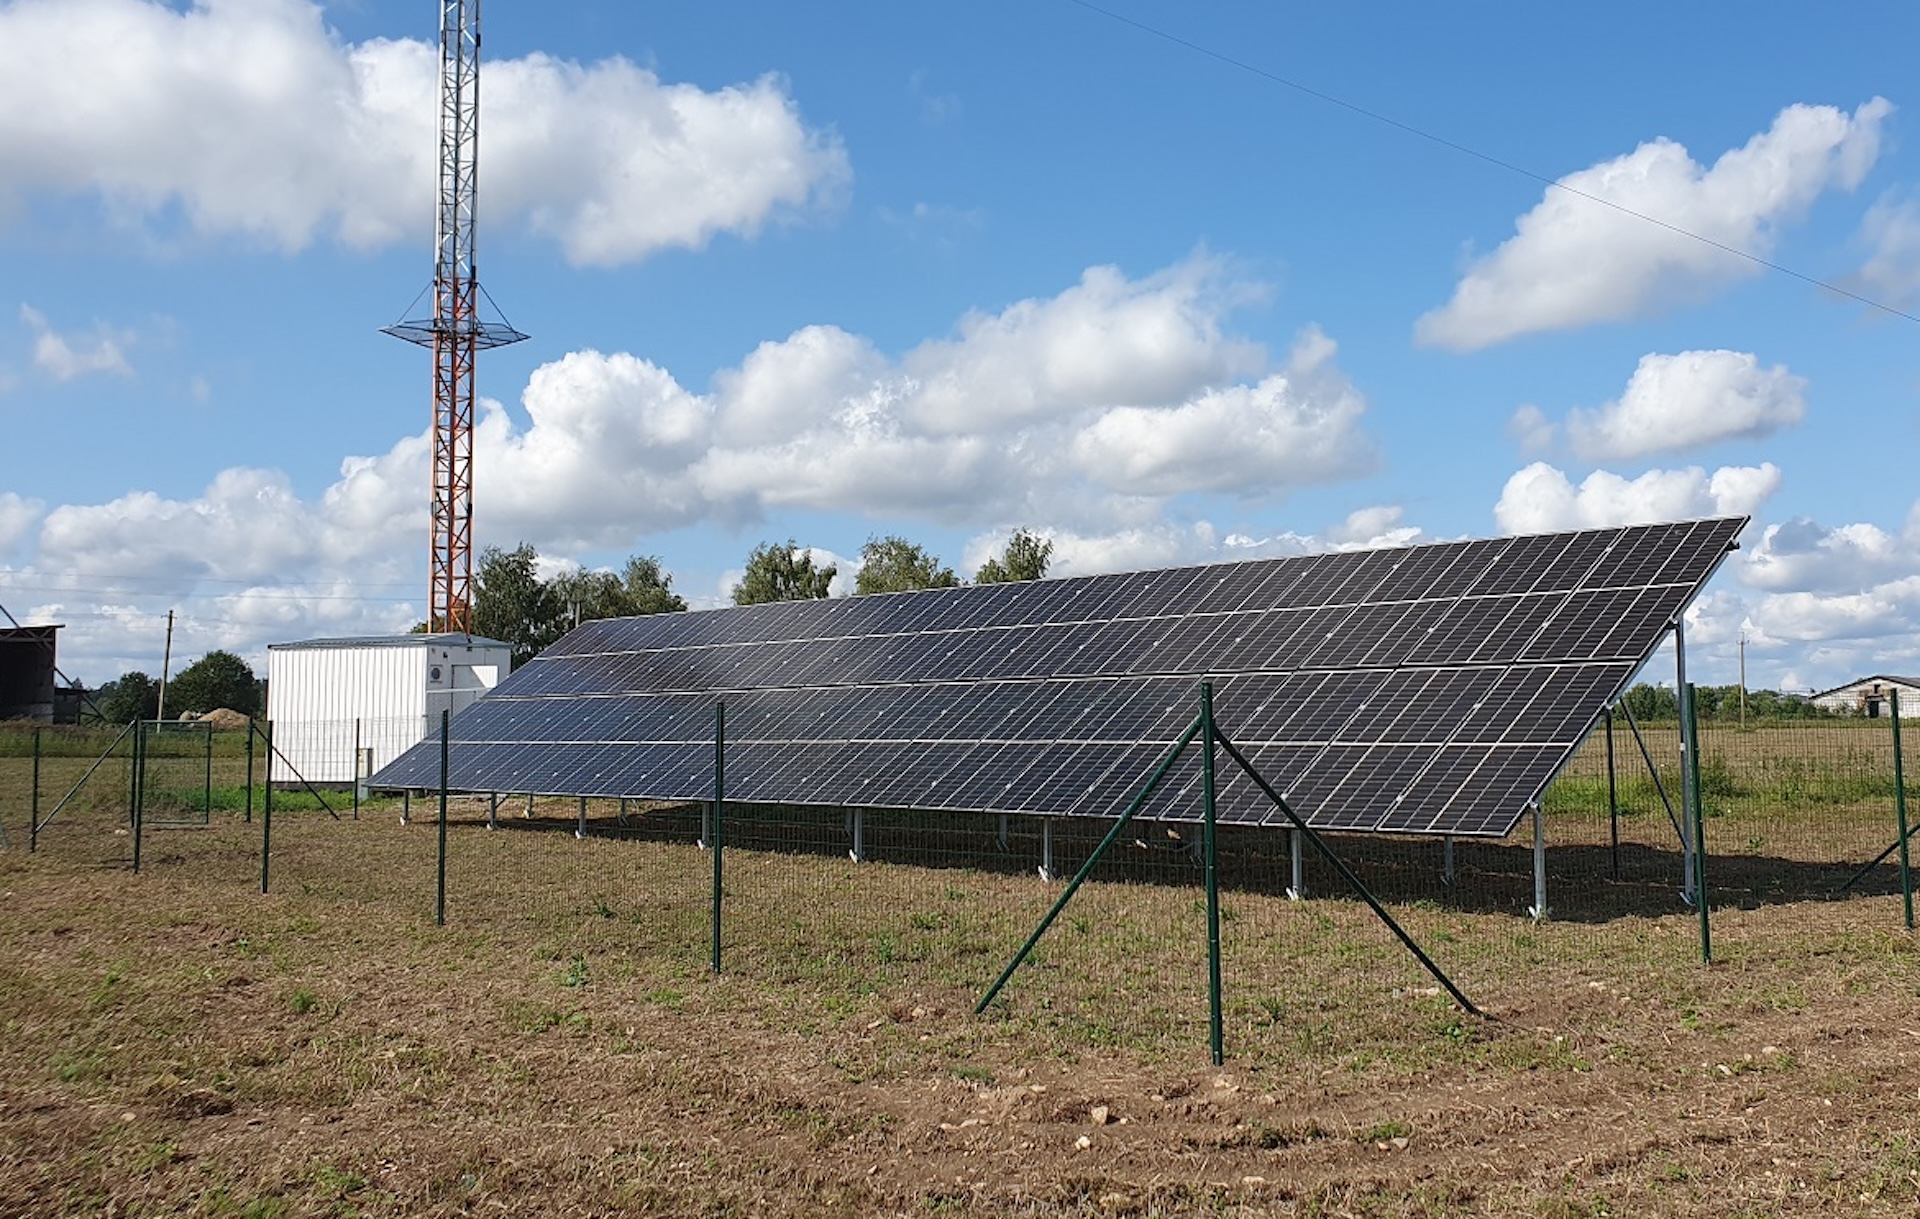 Până la sfârșitul anului, aproape 100 de turnuri mobile Telia vor fi alimentate cu energie solară